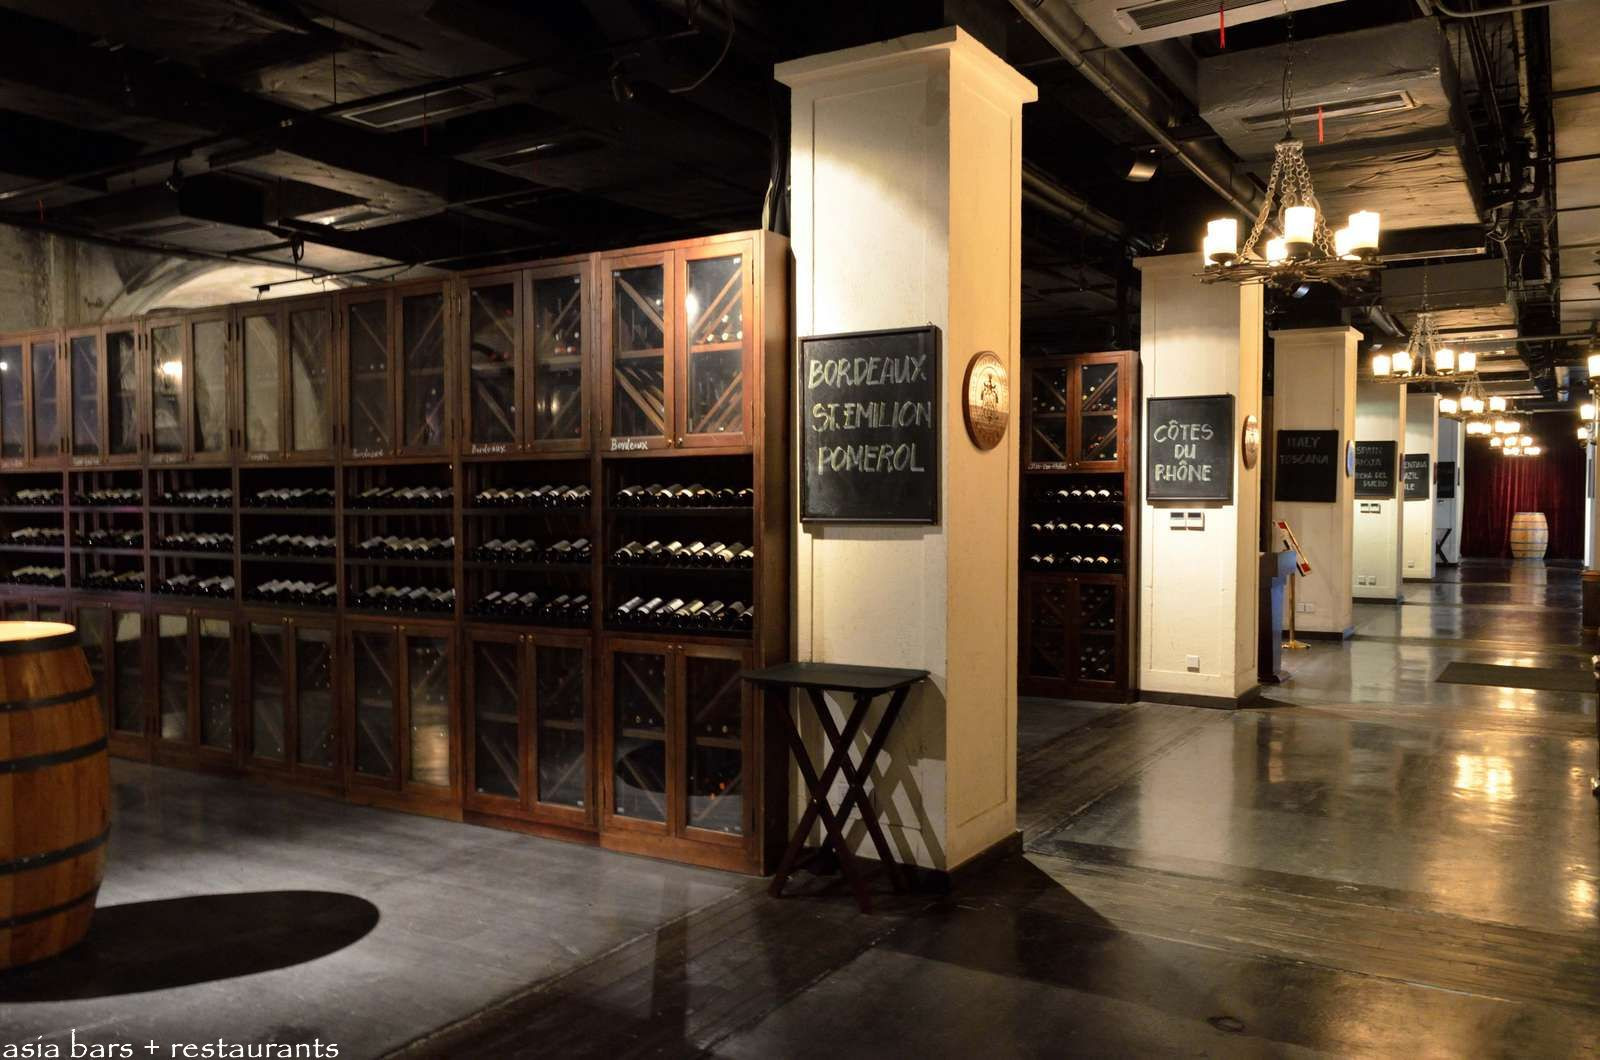 Best ideas about Wine Cellar Restaurant
. Save or Pin Roosevelt Wine Cellar Restaurant at the Bund Shanghai Now.